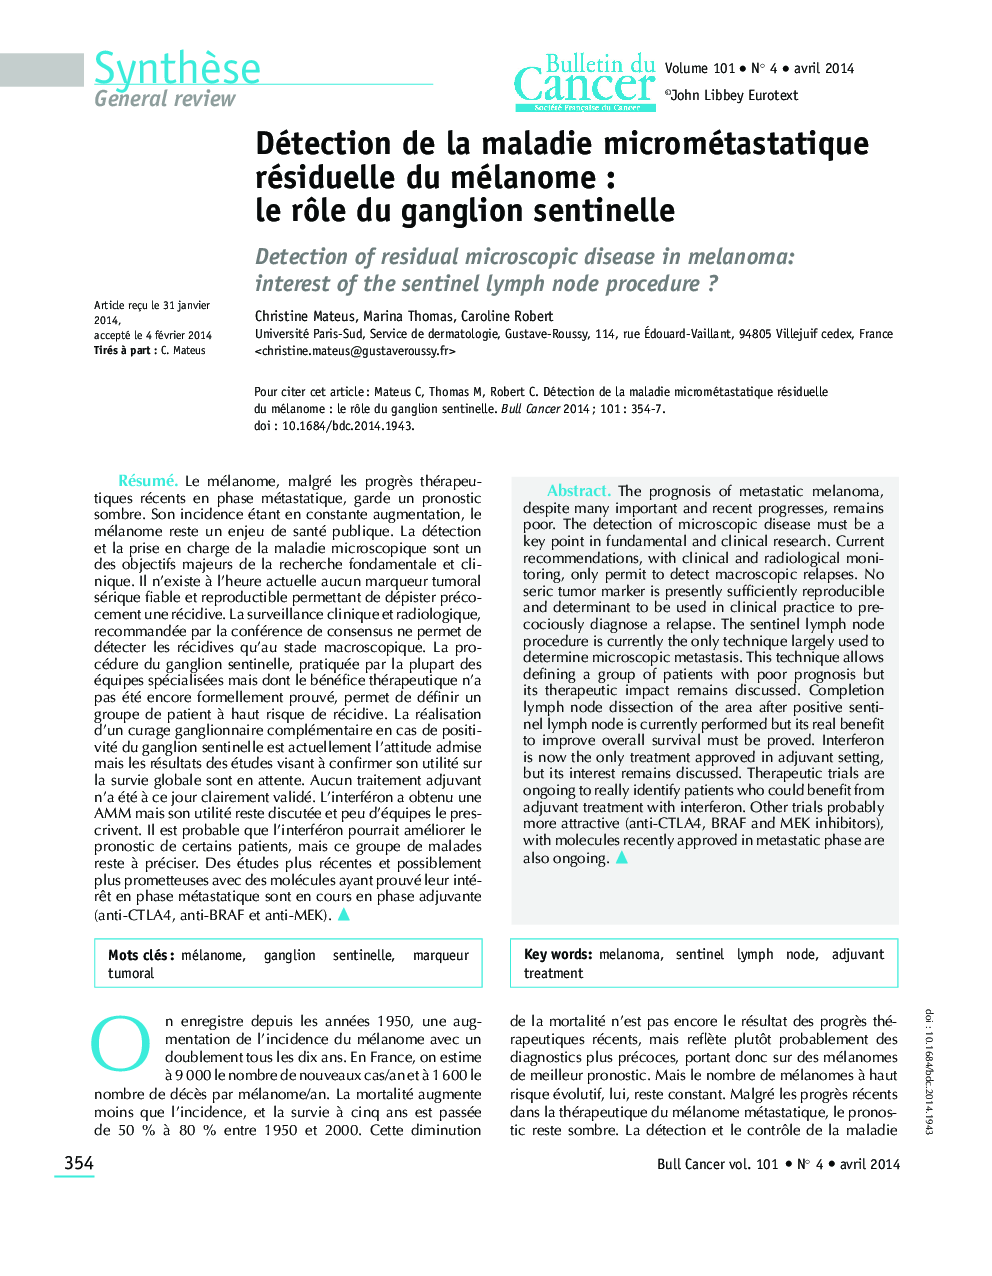 Détection de la maladie micrométastatique résiduelle du mélanome : le rÃ´le du ganglion sentinelle